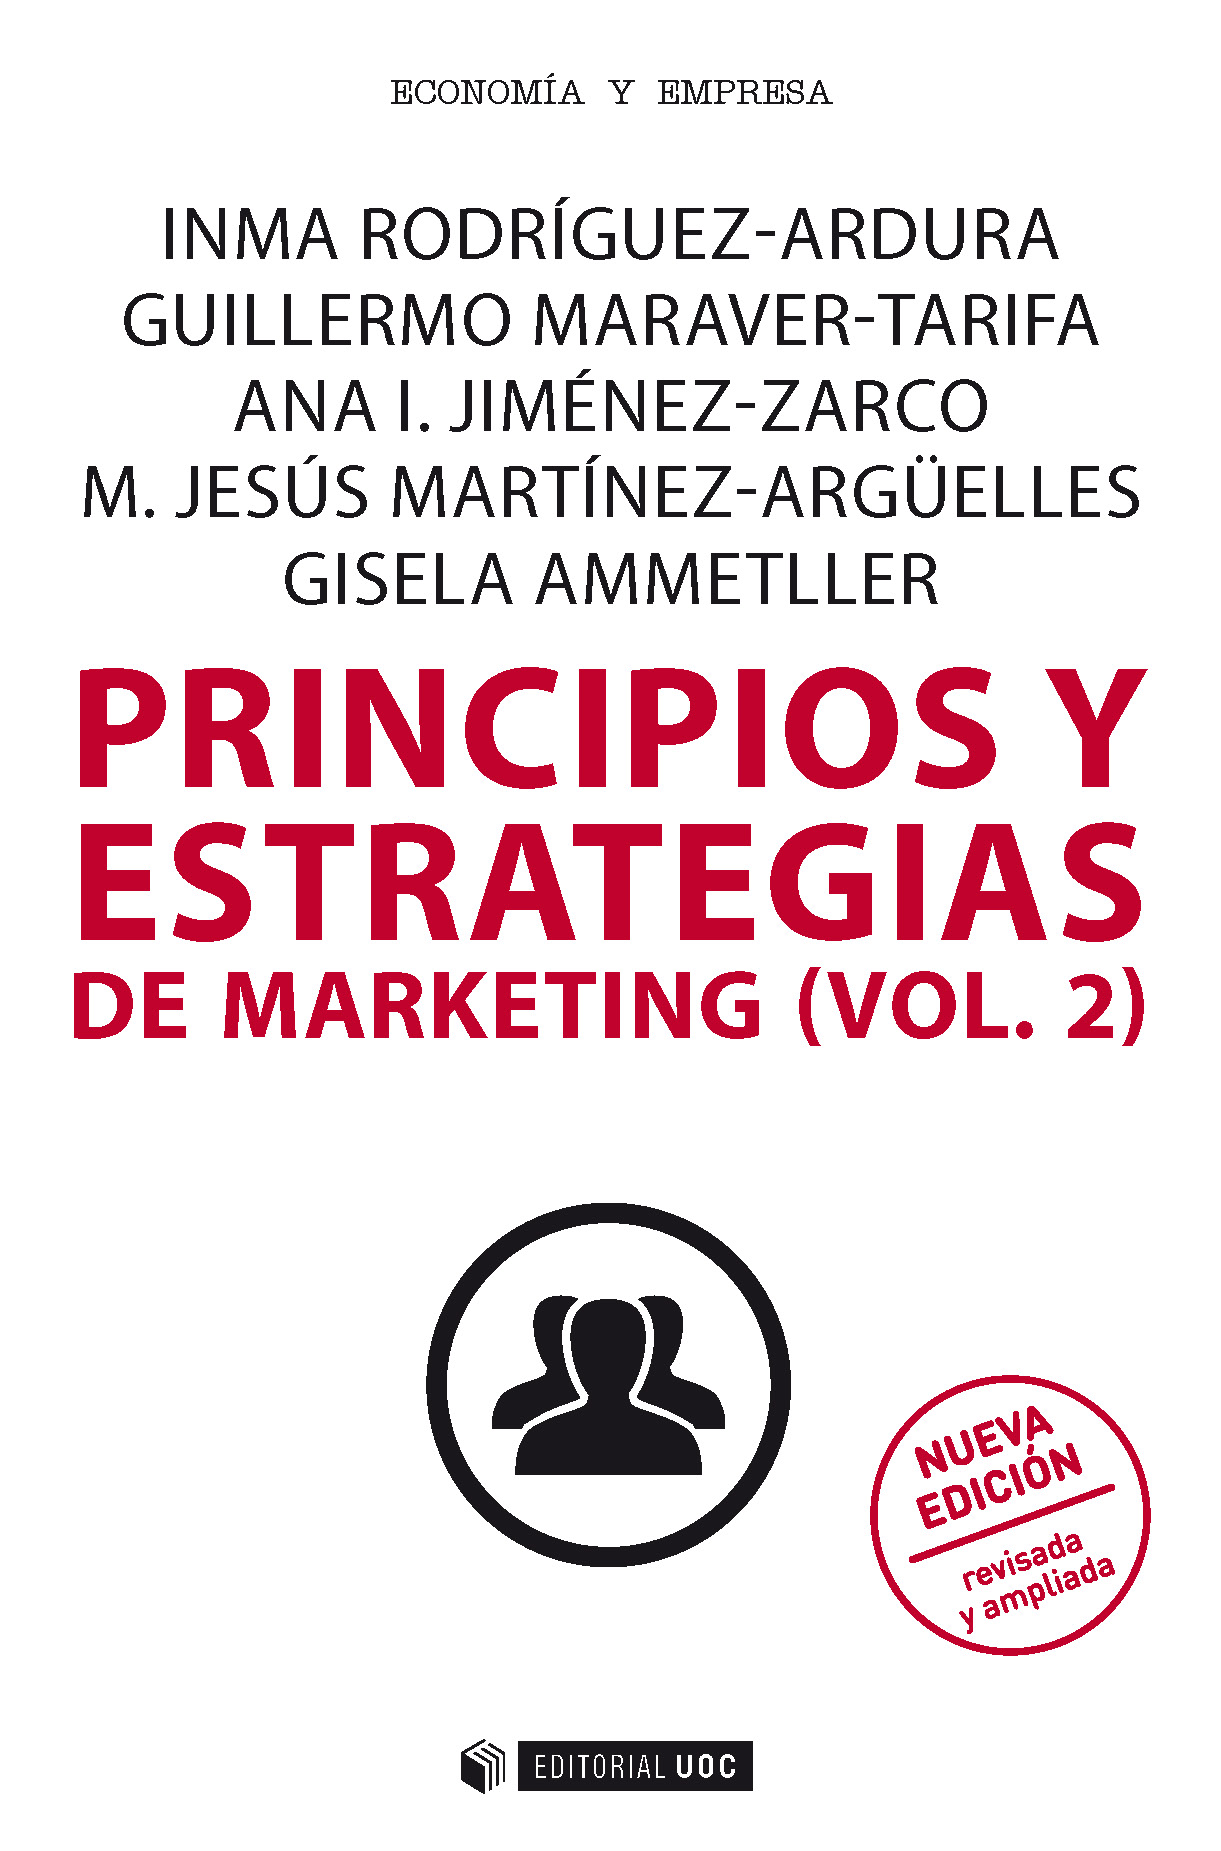 Principios y estrategias de marketing (vol.2)